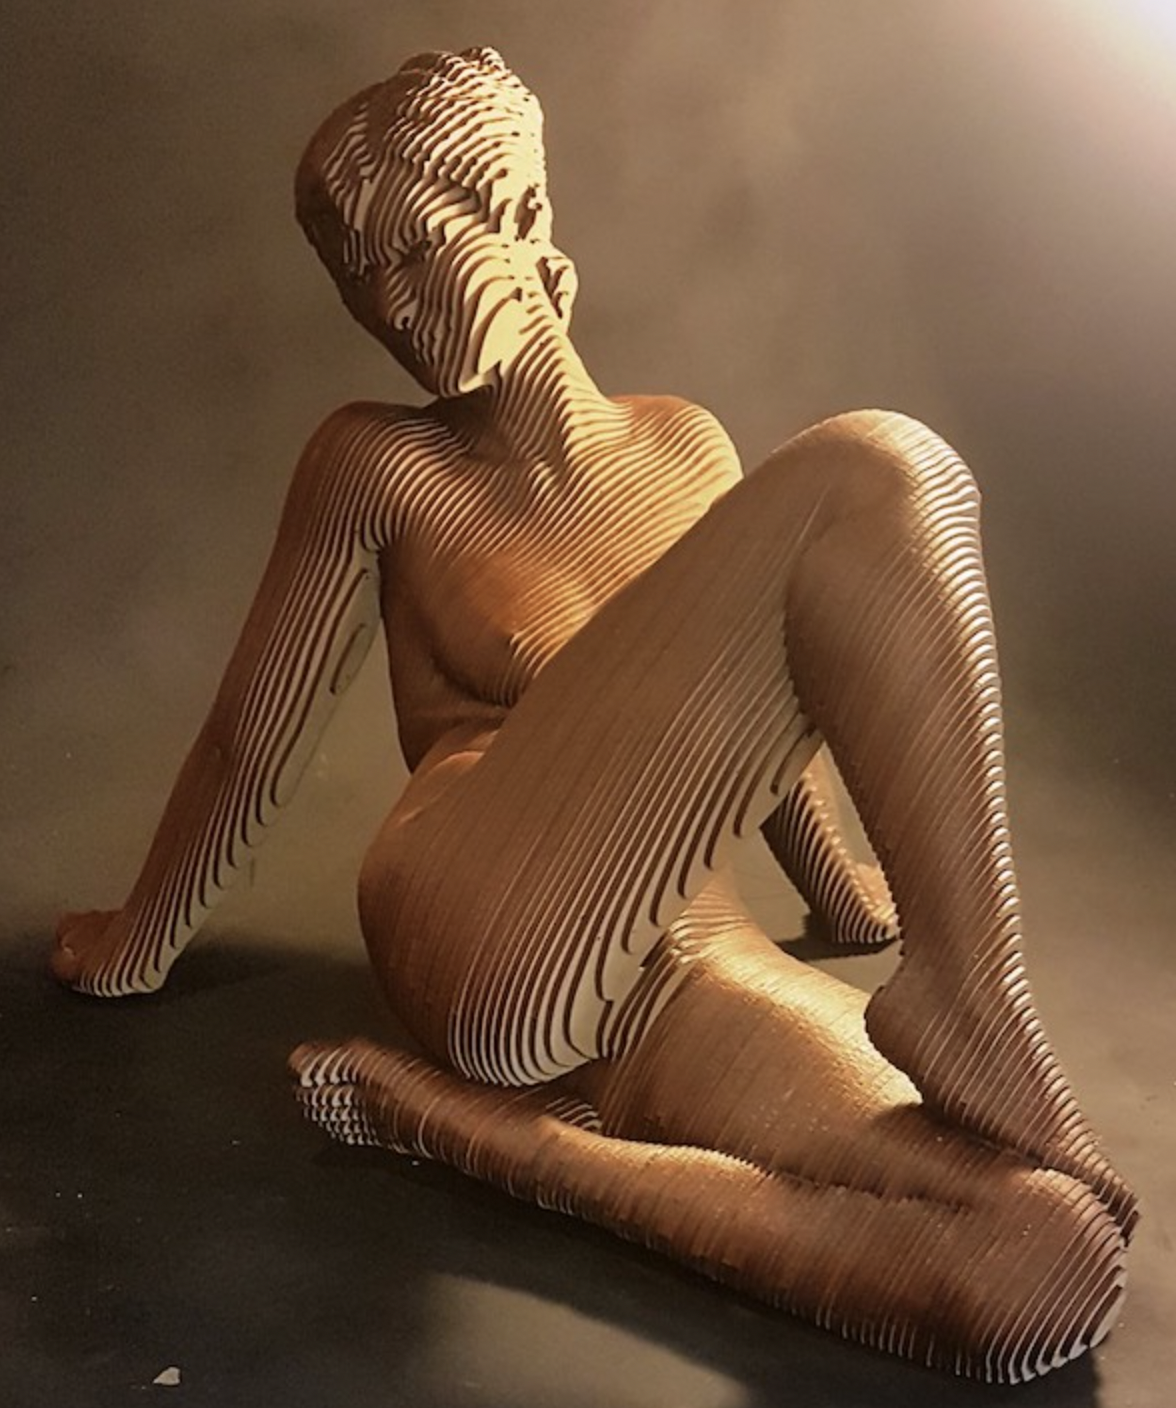 Olivier Duhamel - Sandy Sculpture en bois 40 x 44 x 40 cm | 15 7/80 x 17 3/10 x 15 7/80 in Édition de 8 © Marciano Contemporary